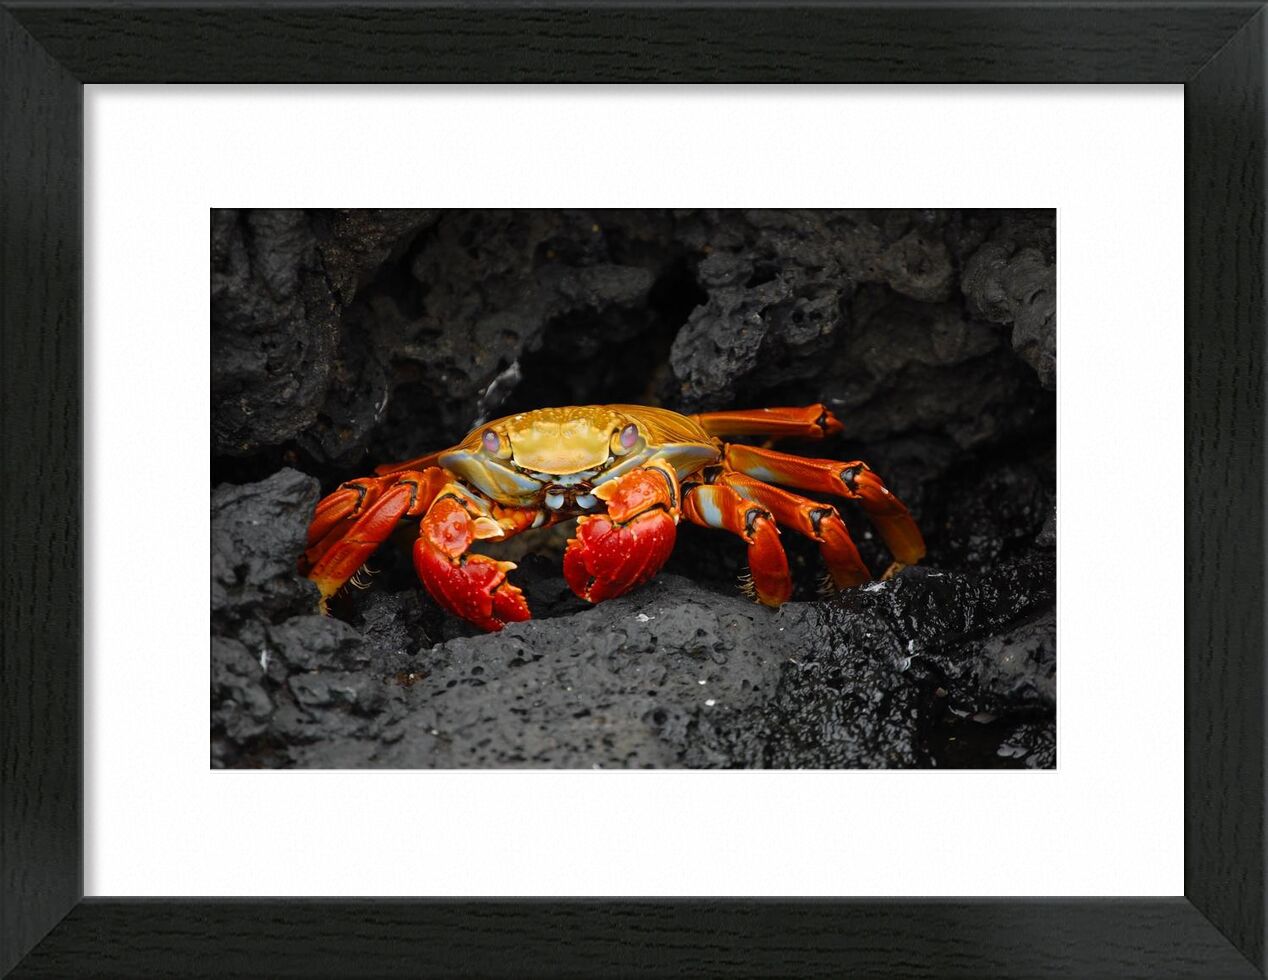 Crabe de Aliss ART, Prodi Art, fruits de mer, crabe rouge, grapsus grapsus, crustacé, Crabe, des roches, créature, animal